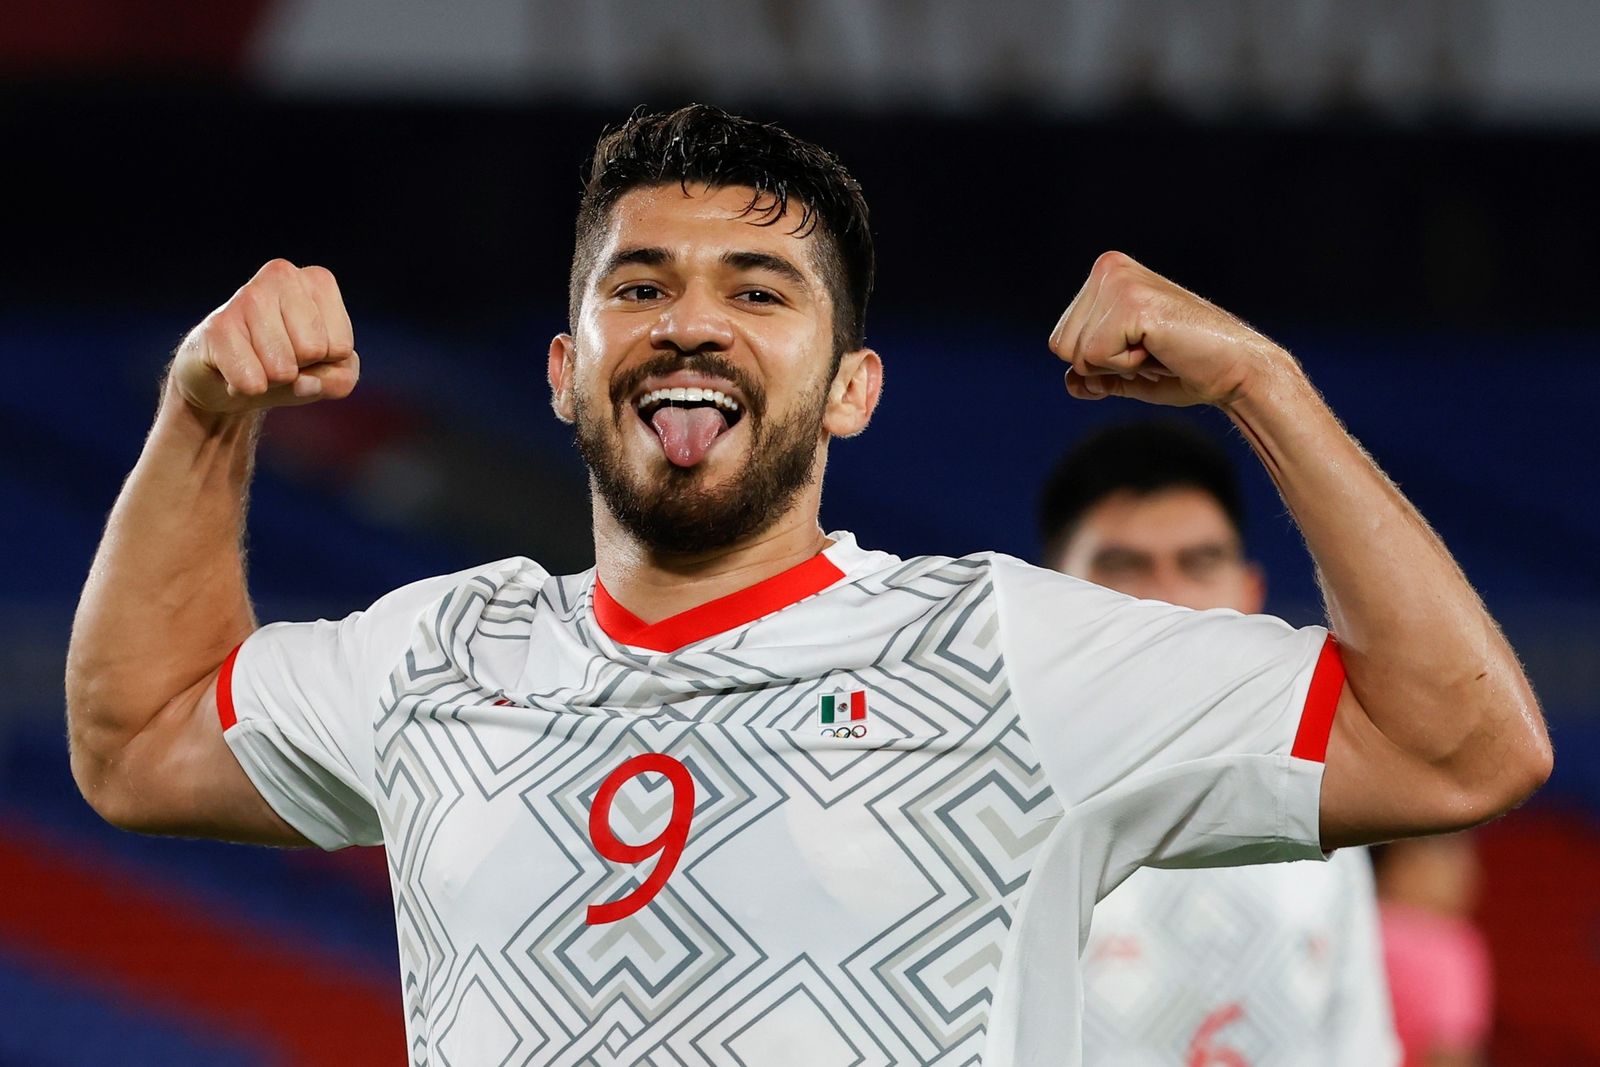 México aplasta 6-3 a Corea del Sur y avanza a semifinales del futbol varonil en Tokio 2020